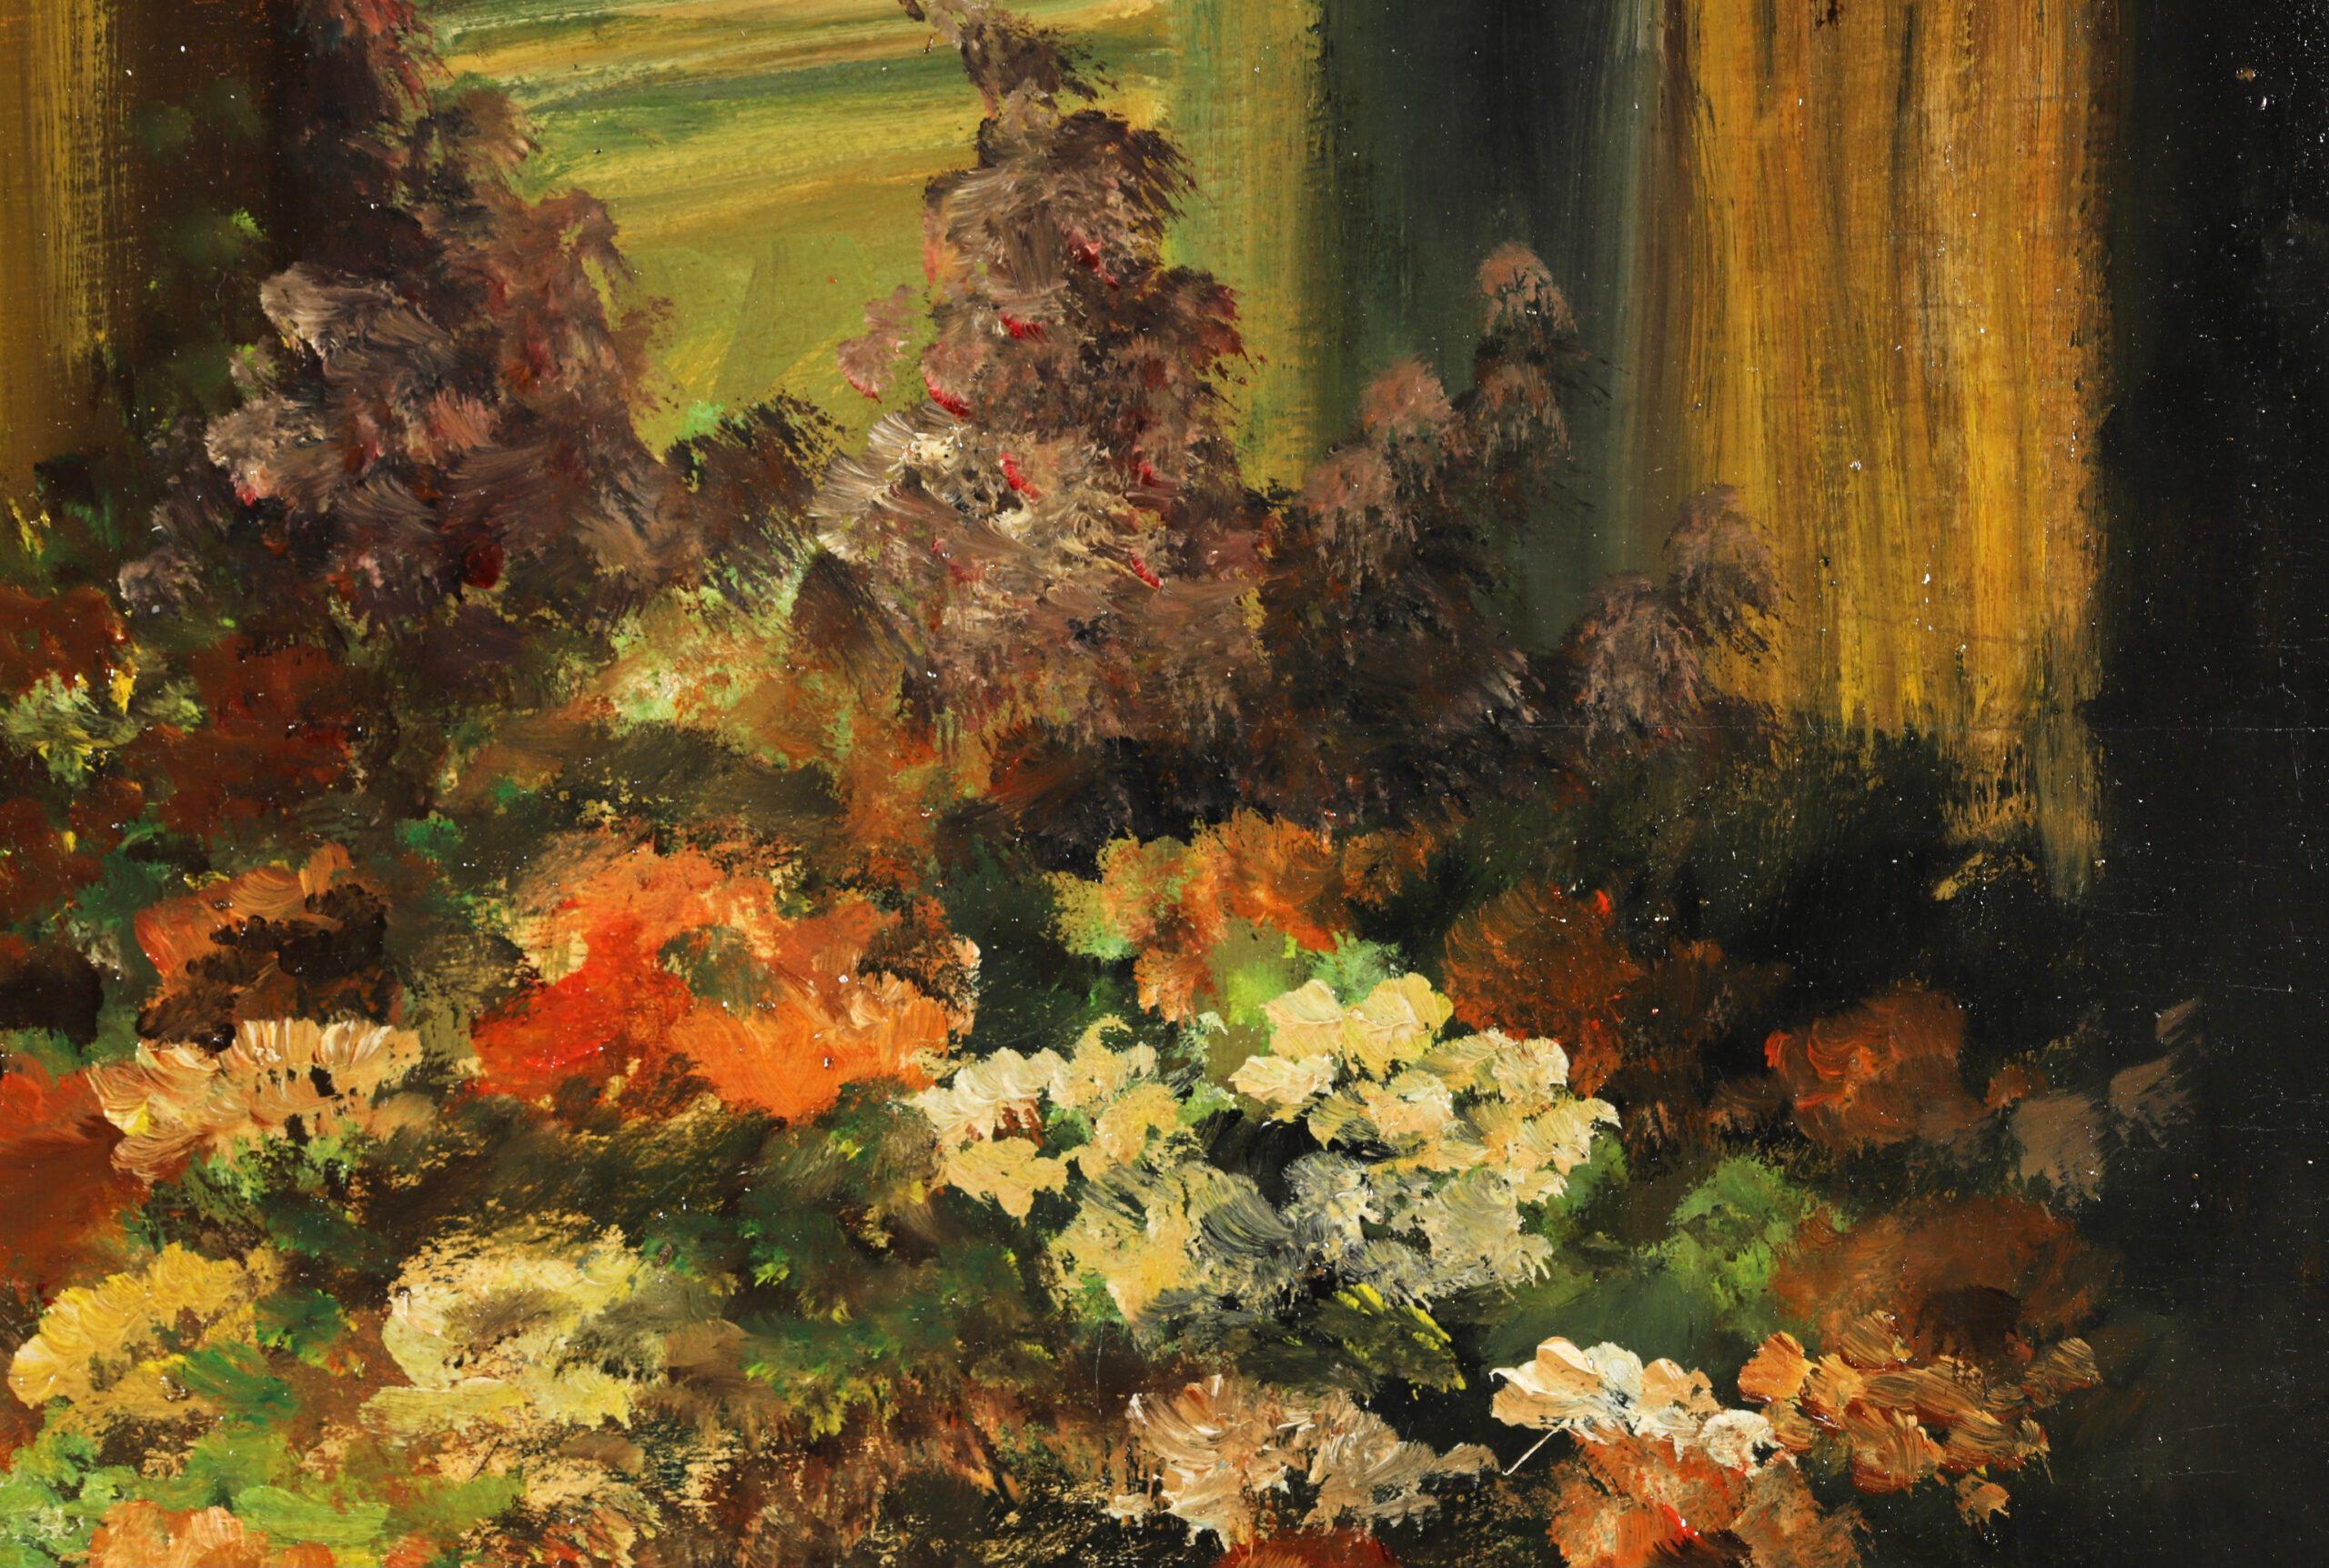 Signiertes impressionistisches Stillleben in Öl auf Platte, um 1920, von dem französischen Maler Edouard Cortes. Das Werk zeigt eine Vase mit herbstlich gefärbten Blumen, die auf einem Holzsims vor einem Spiegel steht. 

Unterschrift:
Signiert unten